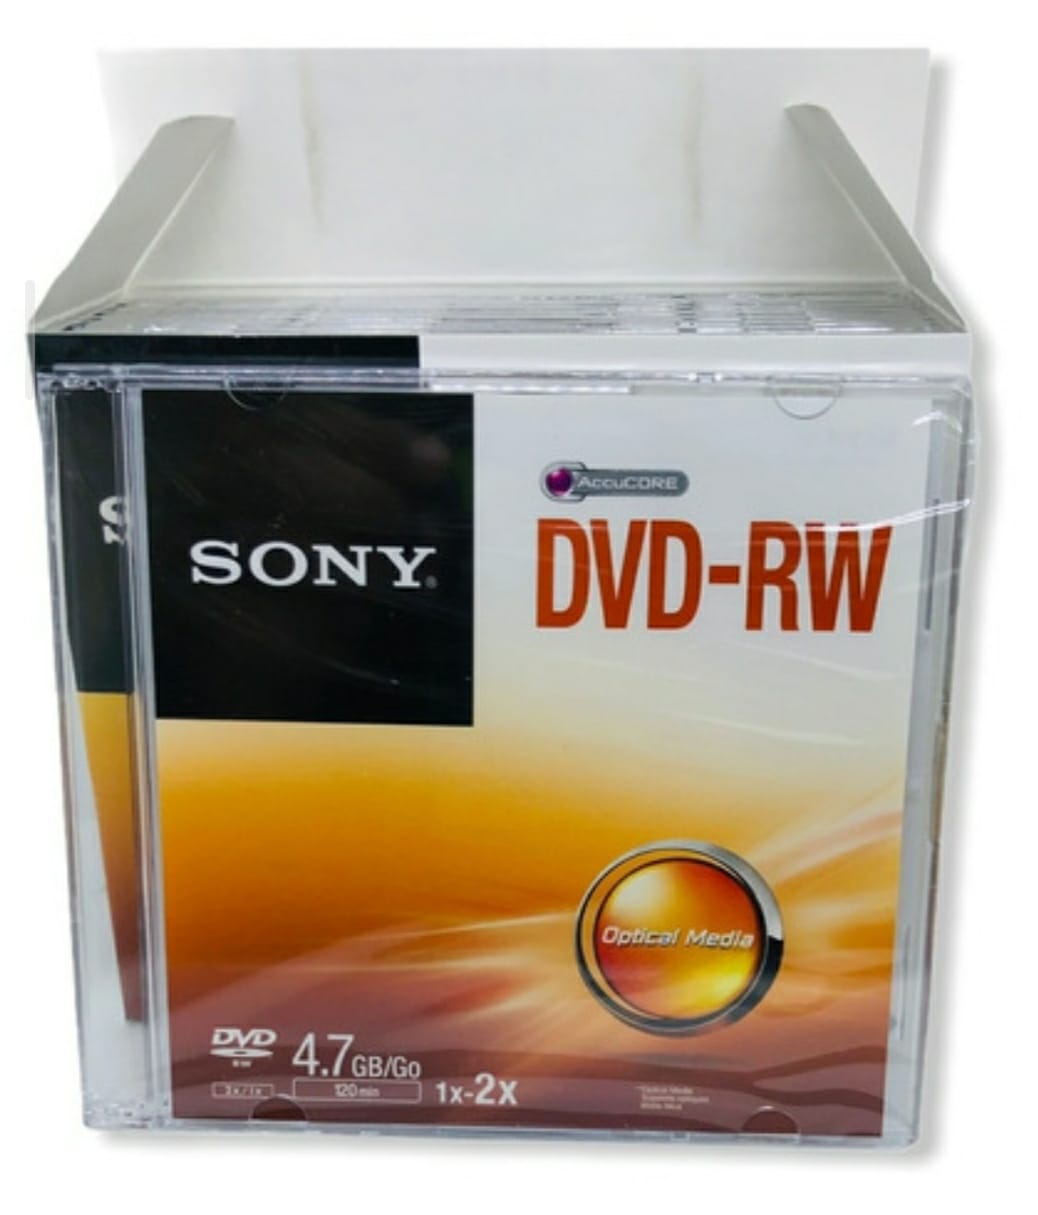 DVD-RW REGRABABLE SONY CON ESTUCHE